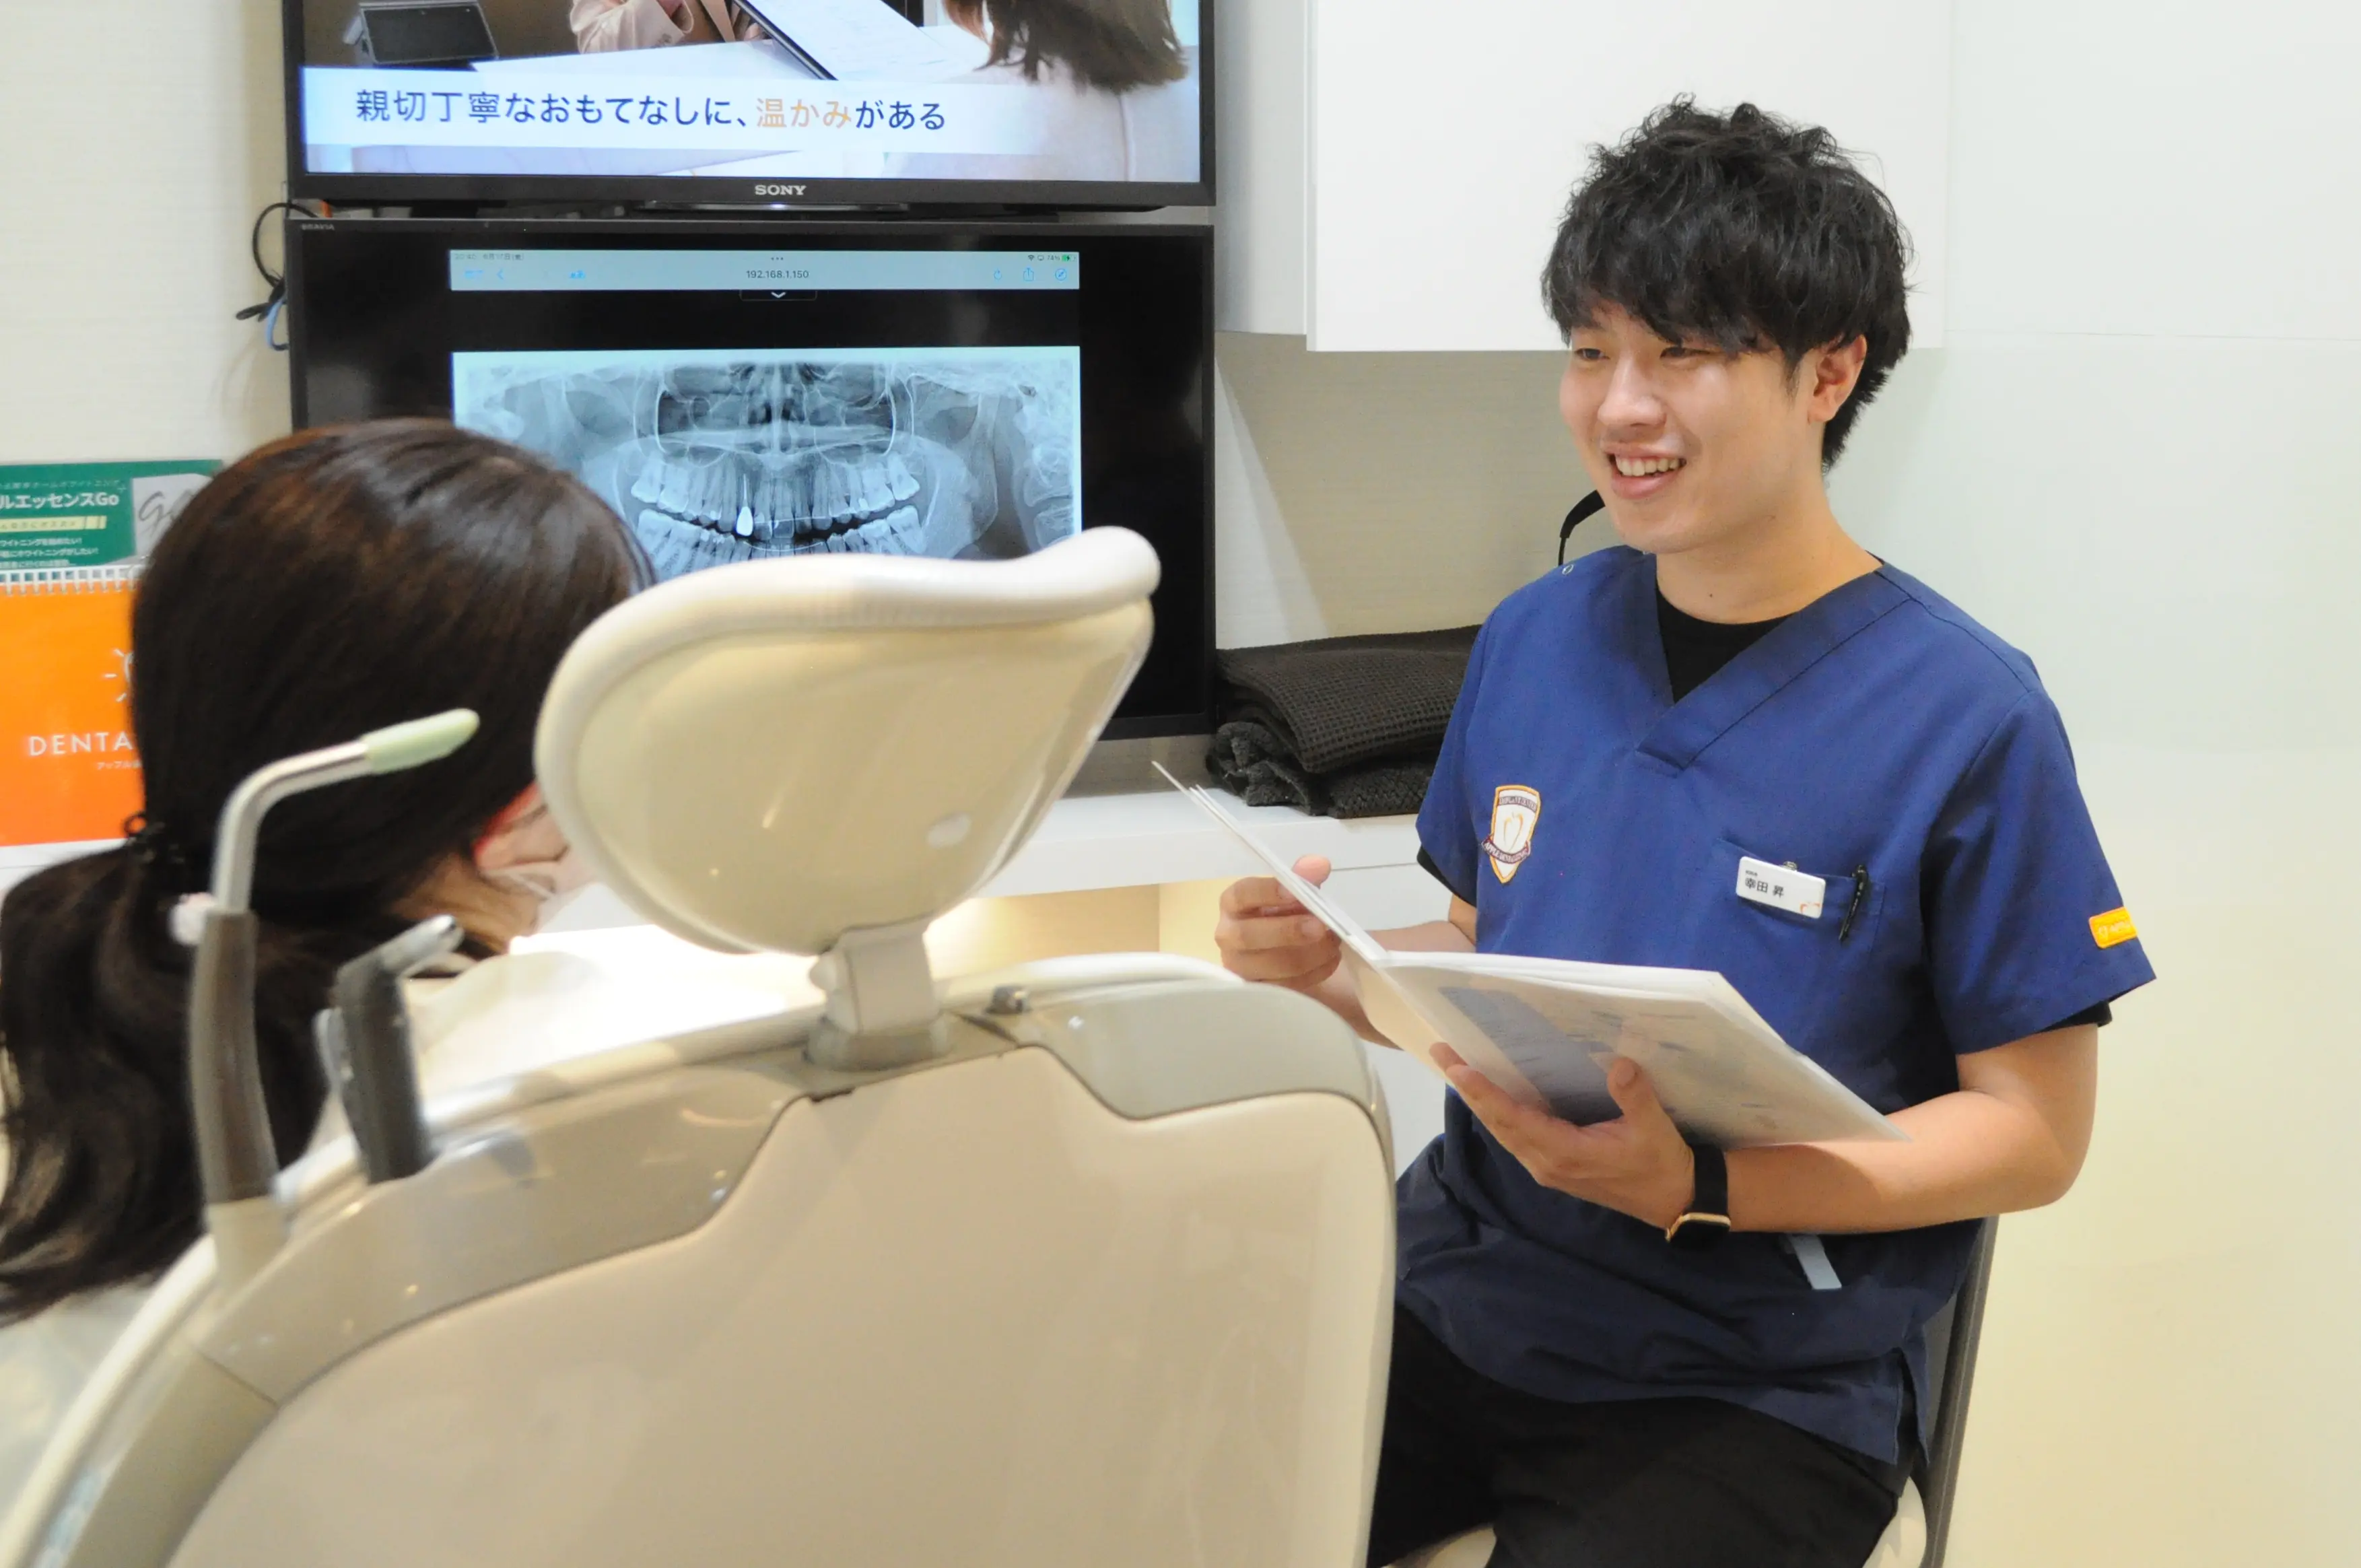 レントゲンを見ながら患者の相談に応じる幸田歯科医師